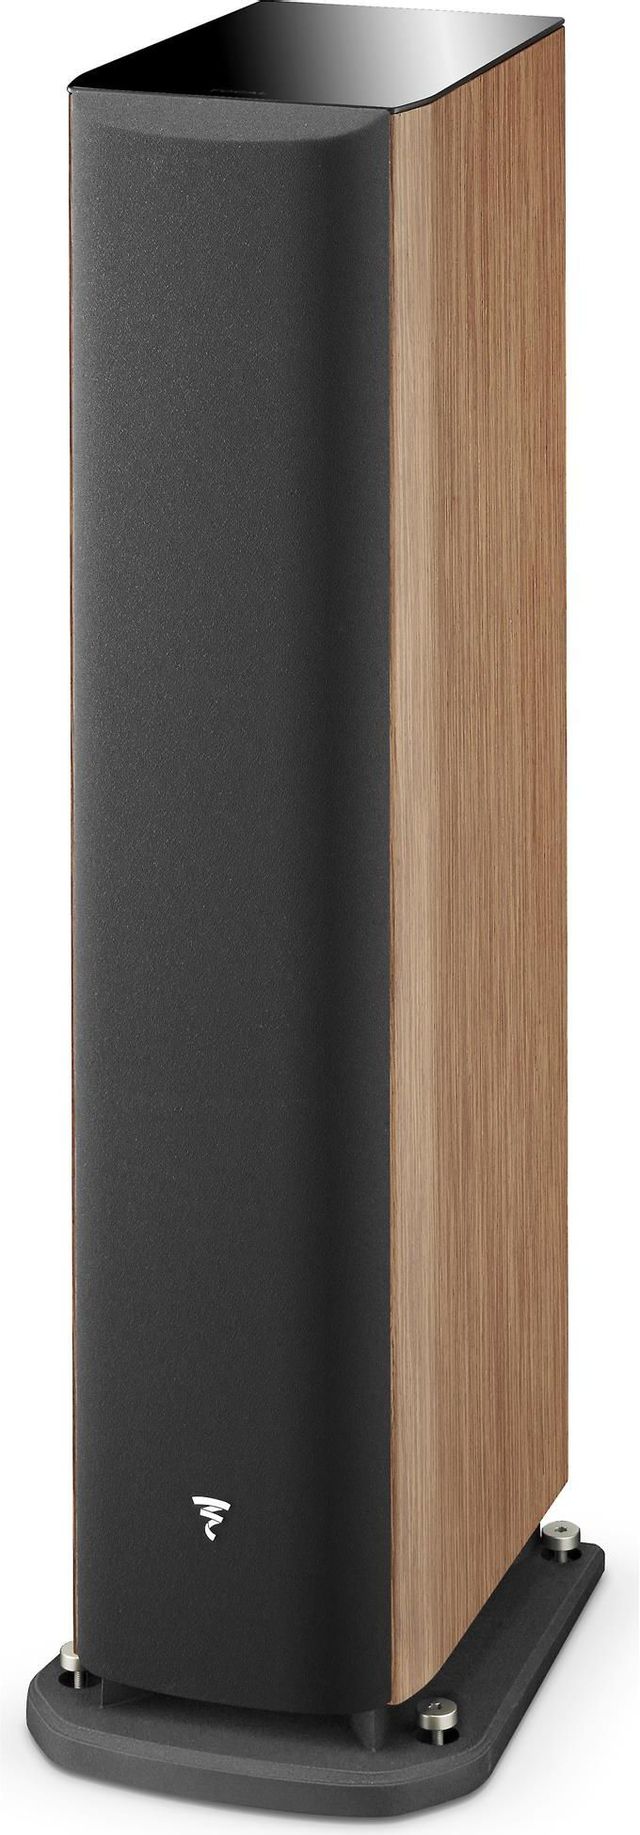 Focal® 6.5" 3-Way Floor Standing Speaker-Prime Walnut 1